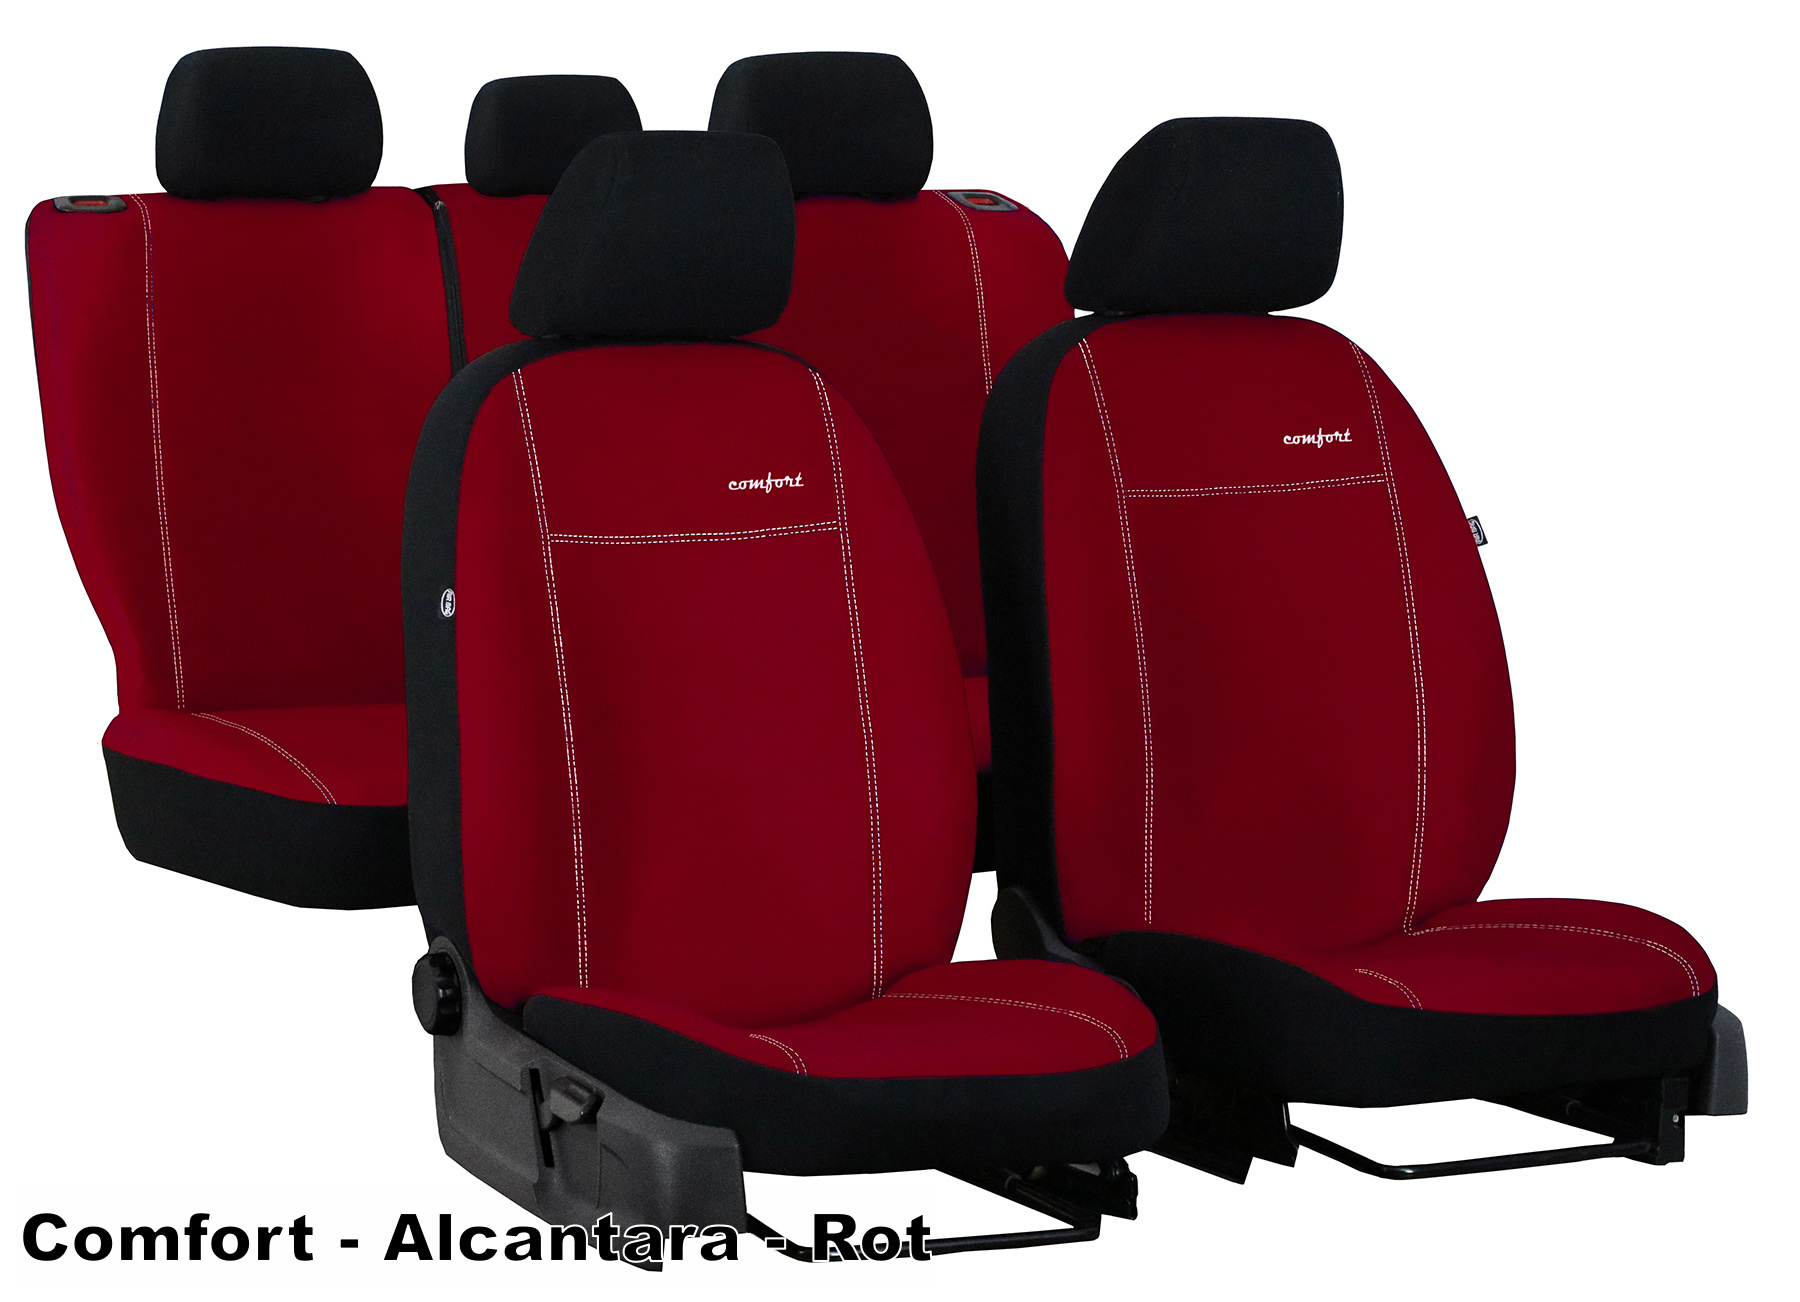 Autositzbezüge passend für Nissan Note in Schwarz Rot Royal